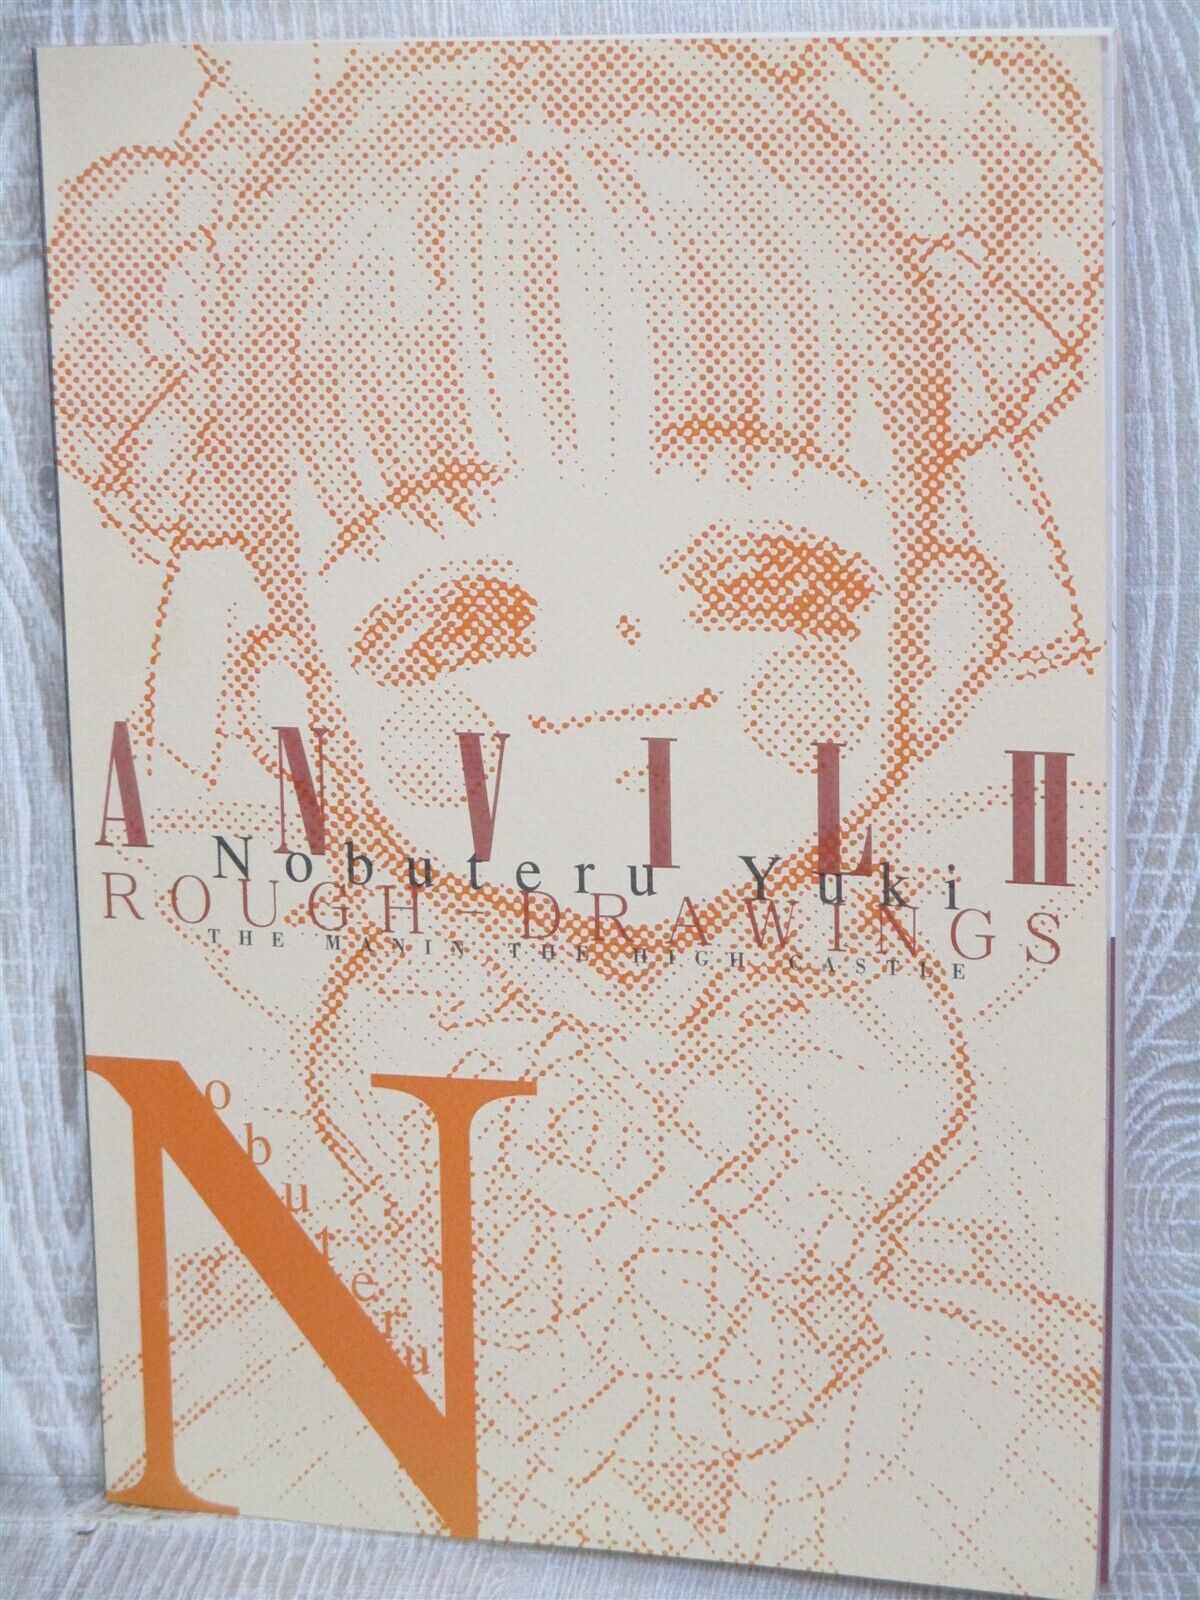 NOBUTERU YUKI Rough Drawing ANVIL II ConceptArt Works Doujin Book 2000 Japan Ltd